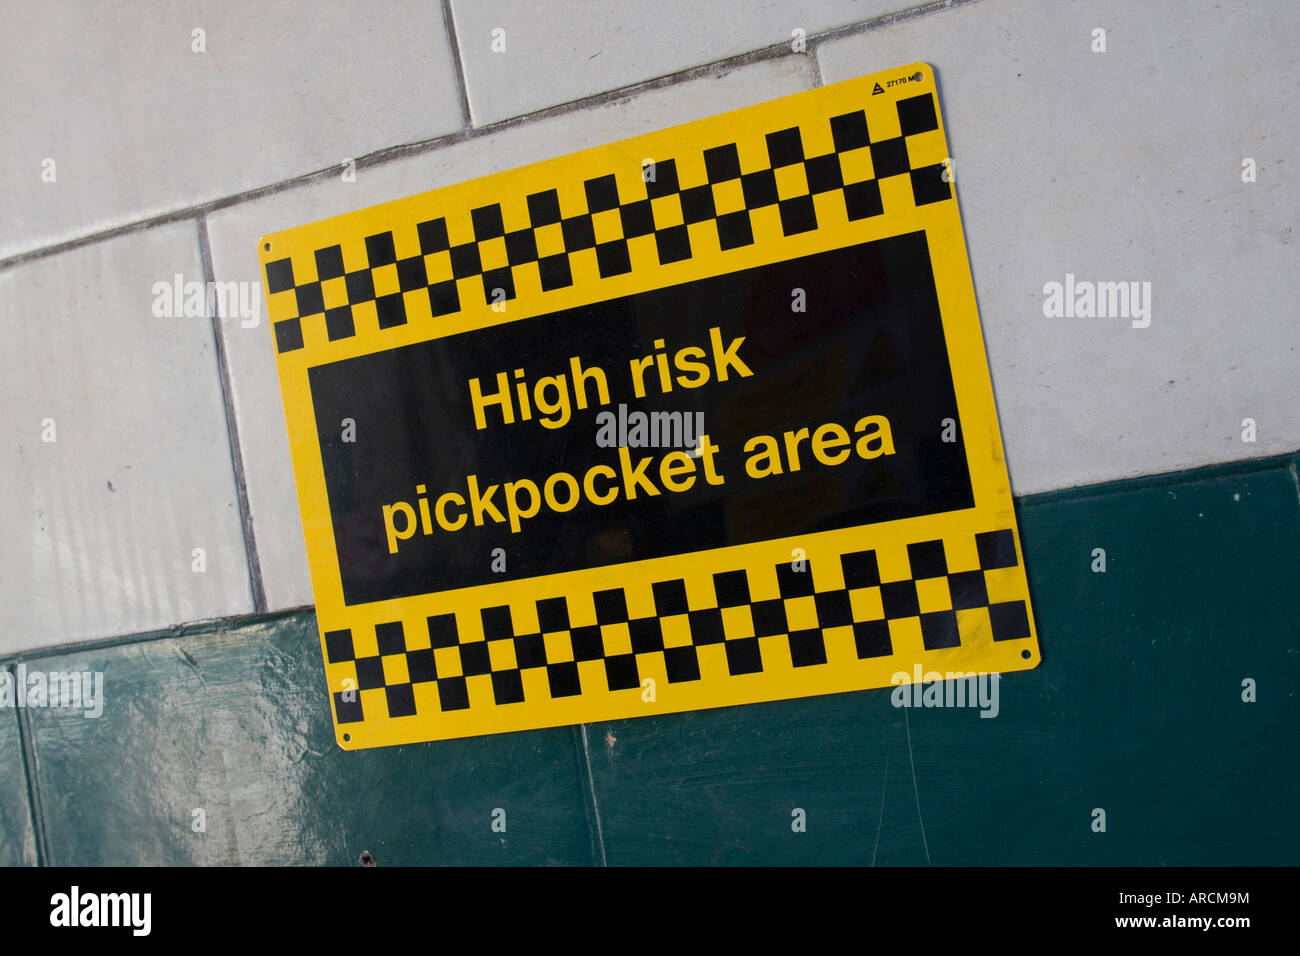 High pickpocket risk area Safety sign 